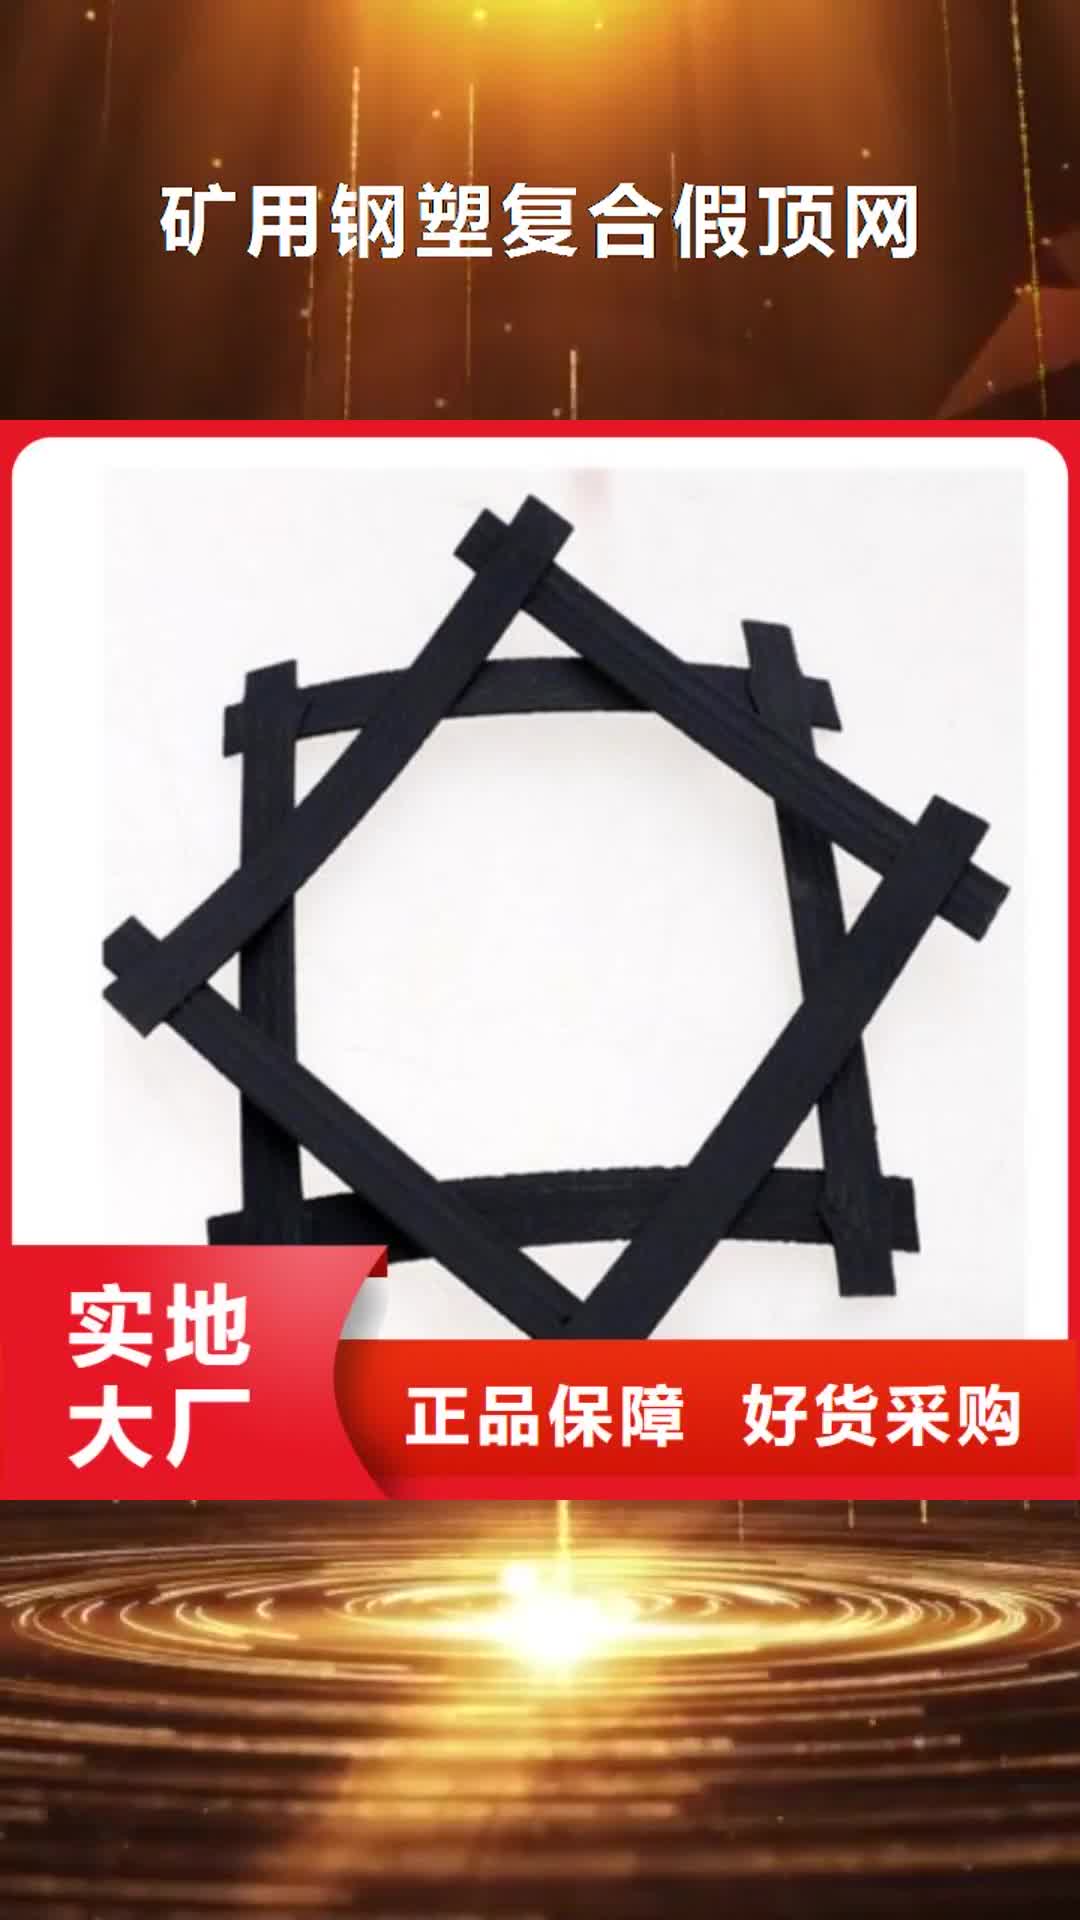 福州 矿用钢塑复合假顶网,【土工布】为品质而生产